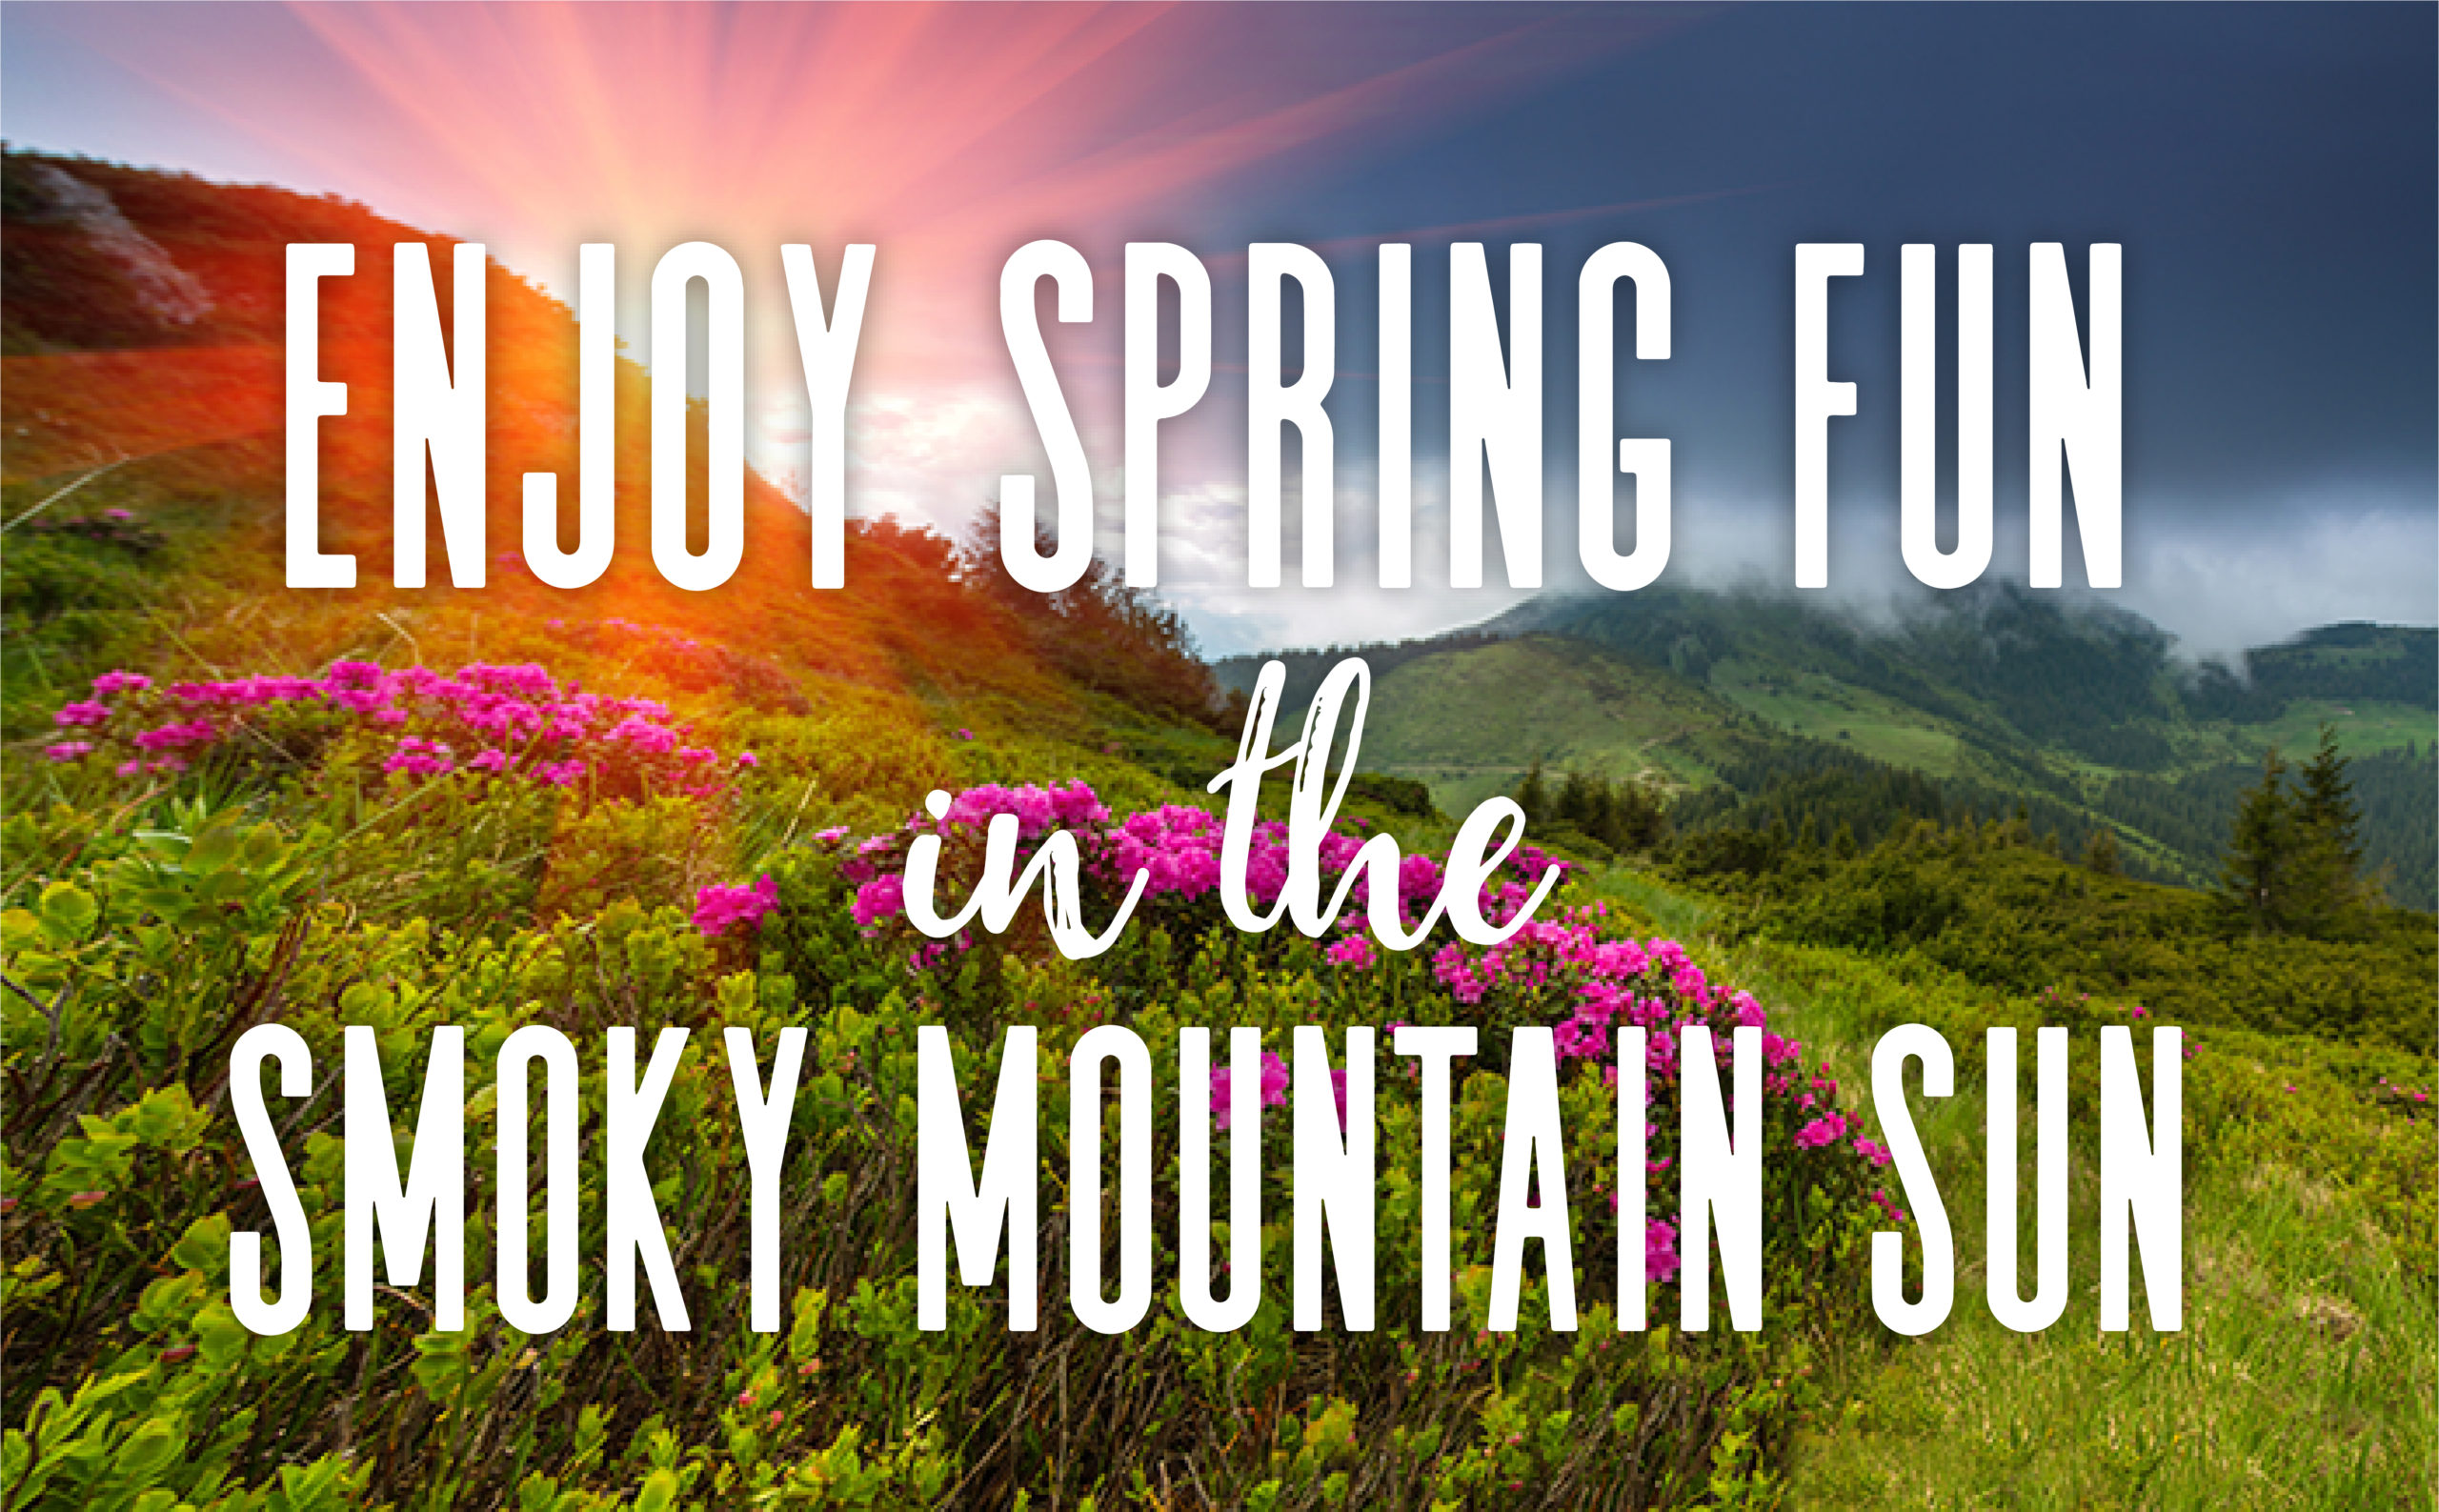 Enjoy Spring Fun in the Smoky Mountain Sun!